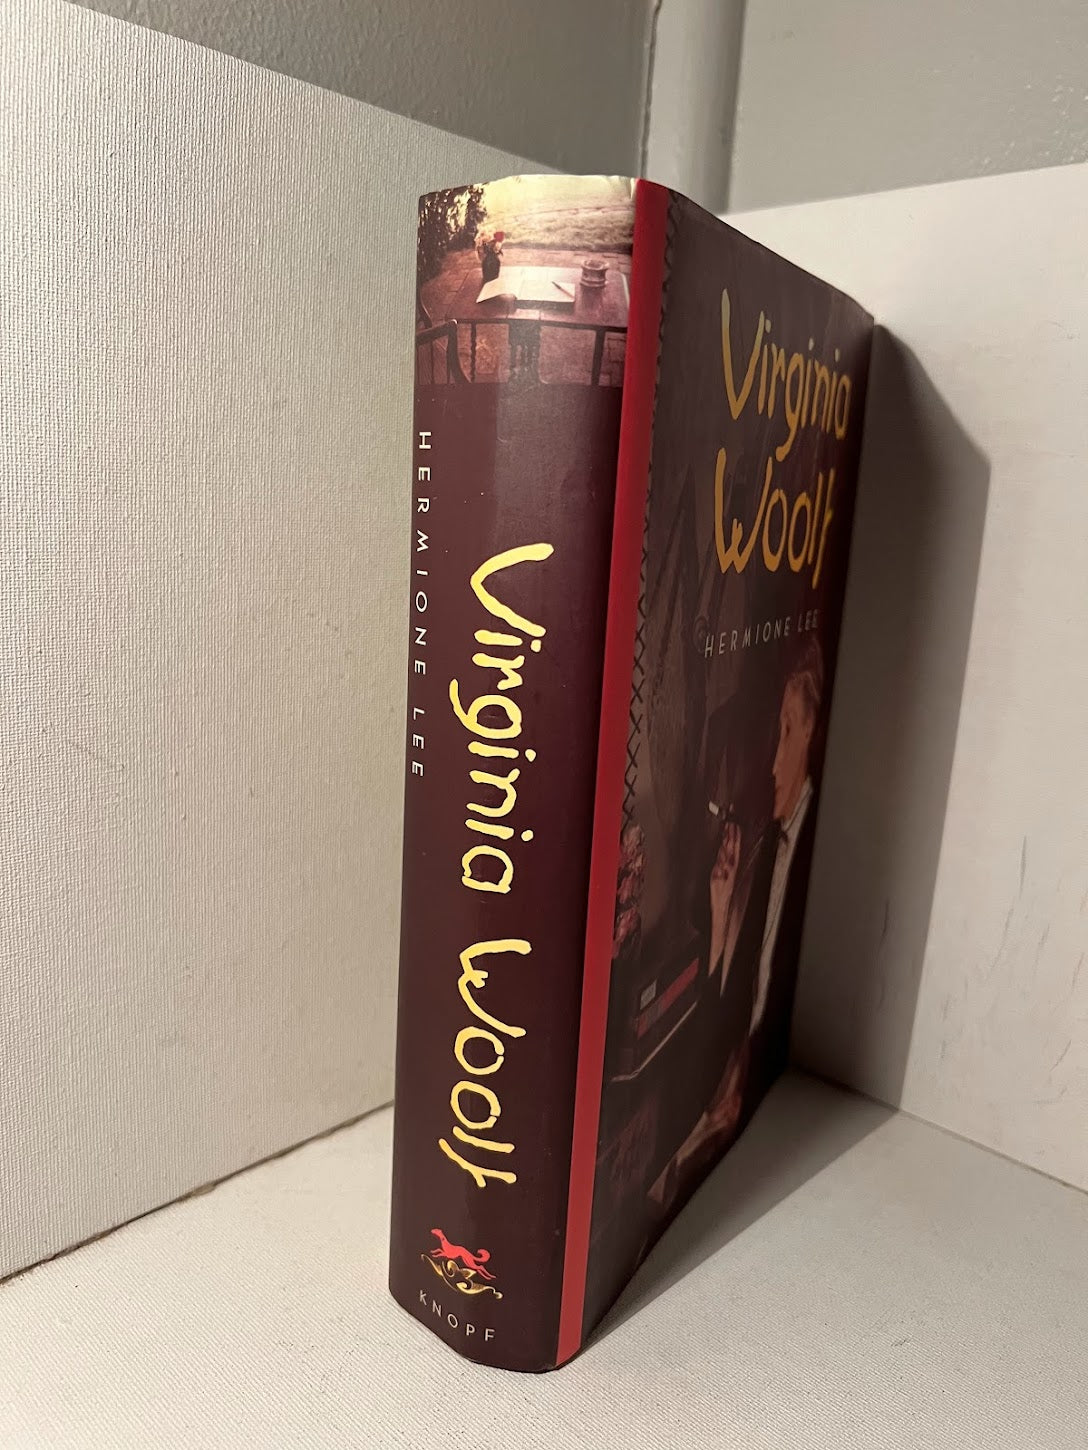 Virginia Woolf by Hermione Lee